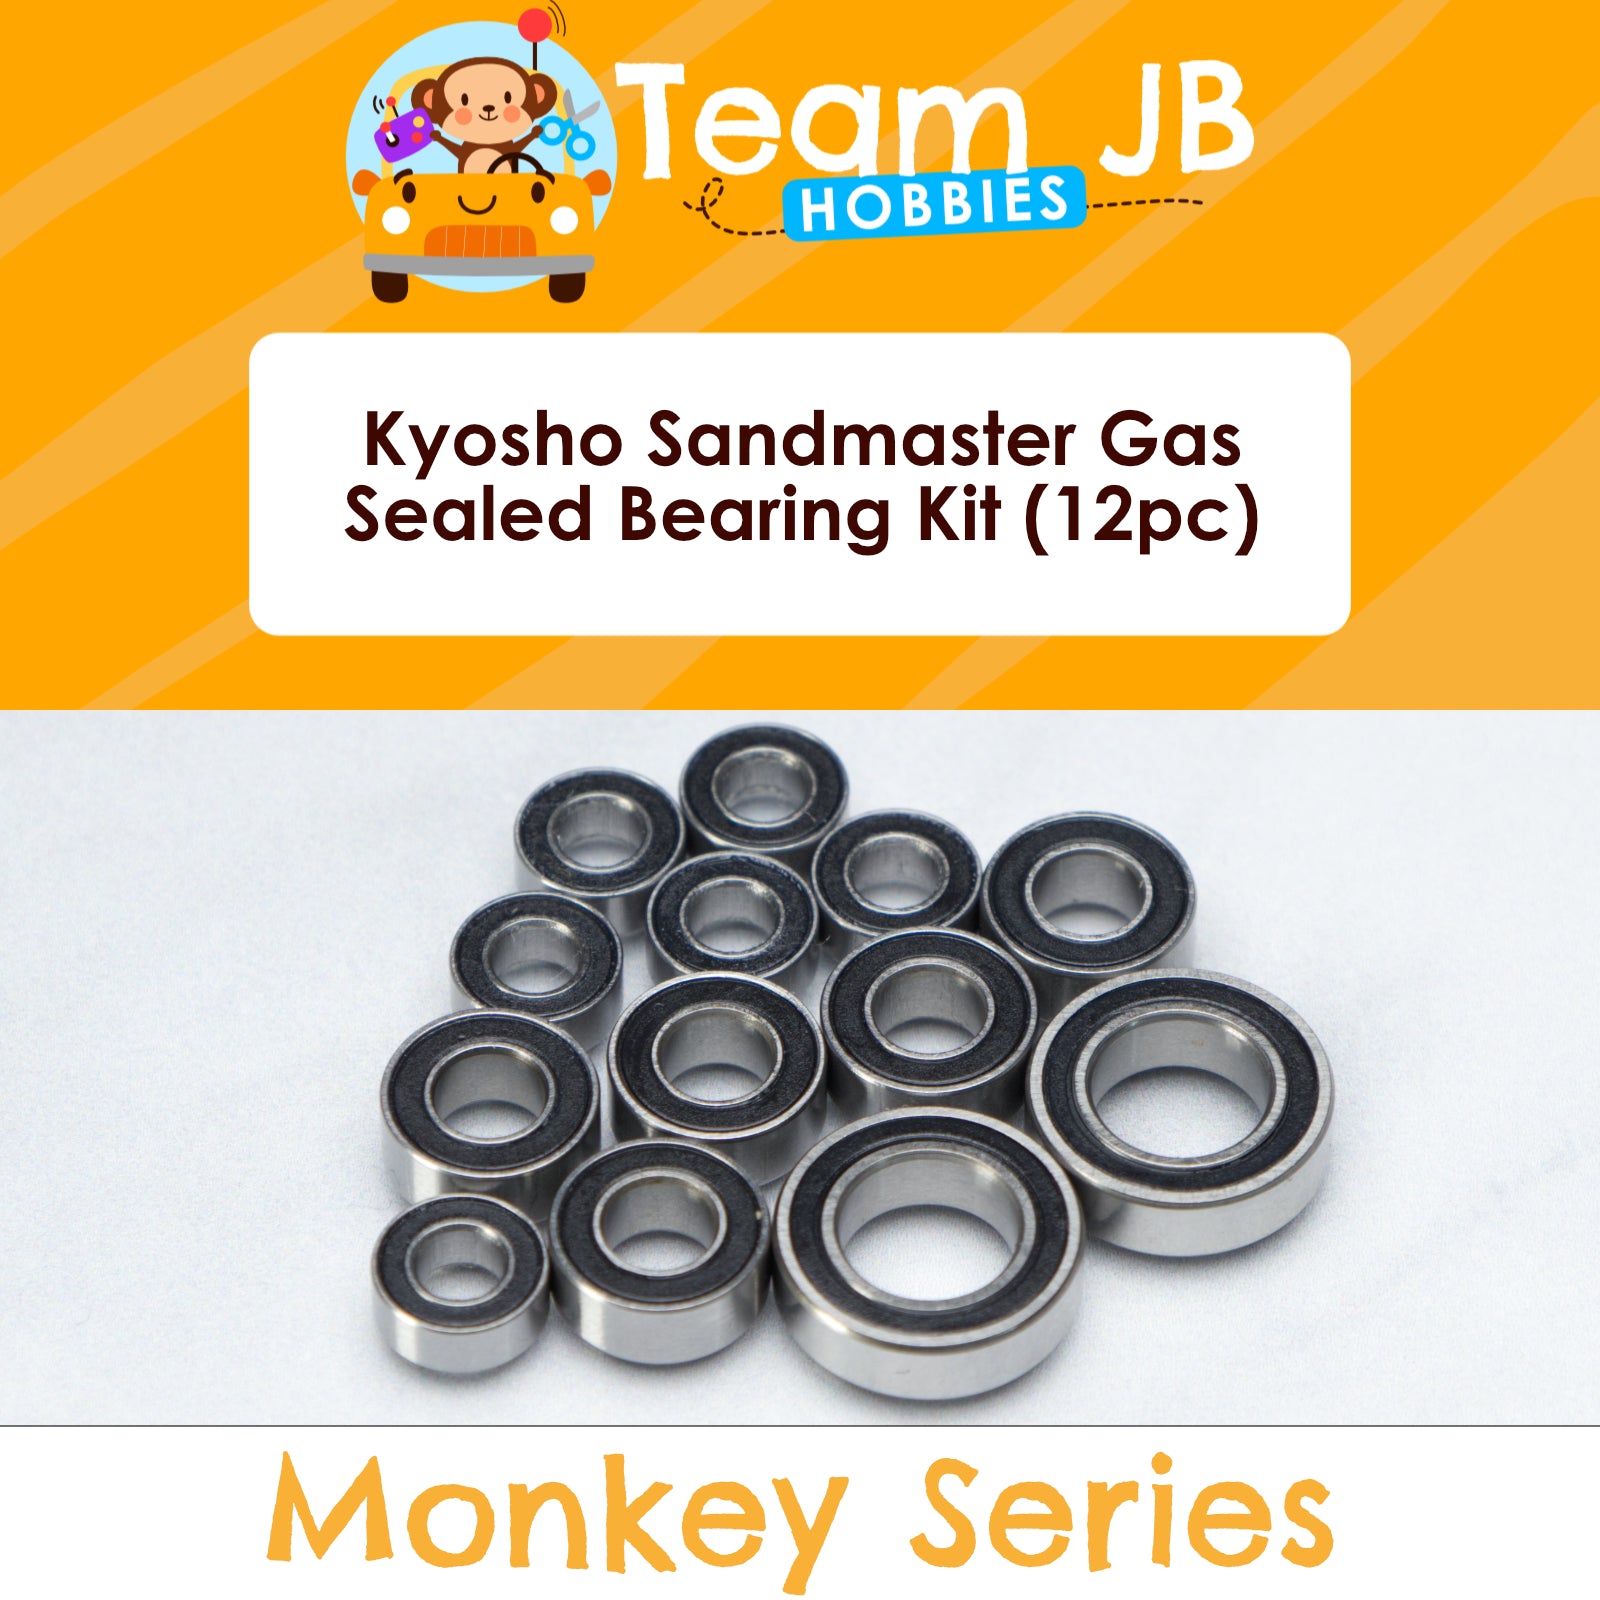 Kyosho Sandmaster Gas - Sealed Bearing Kit